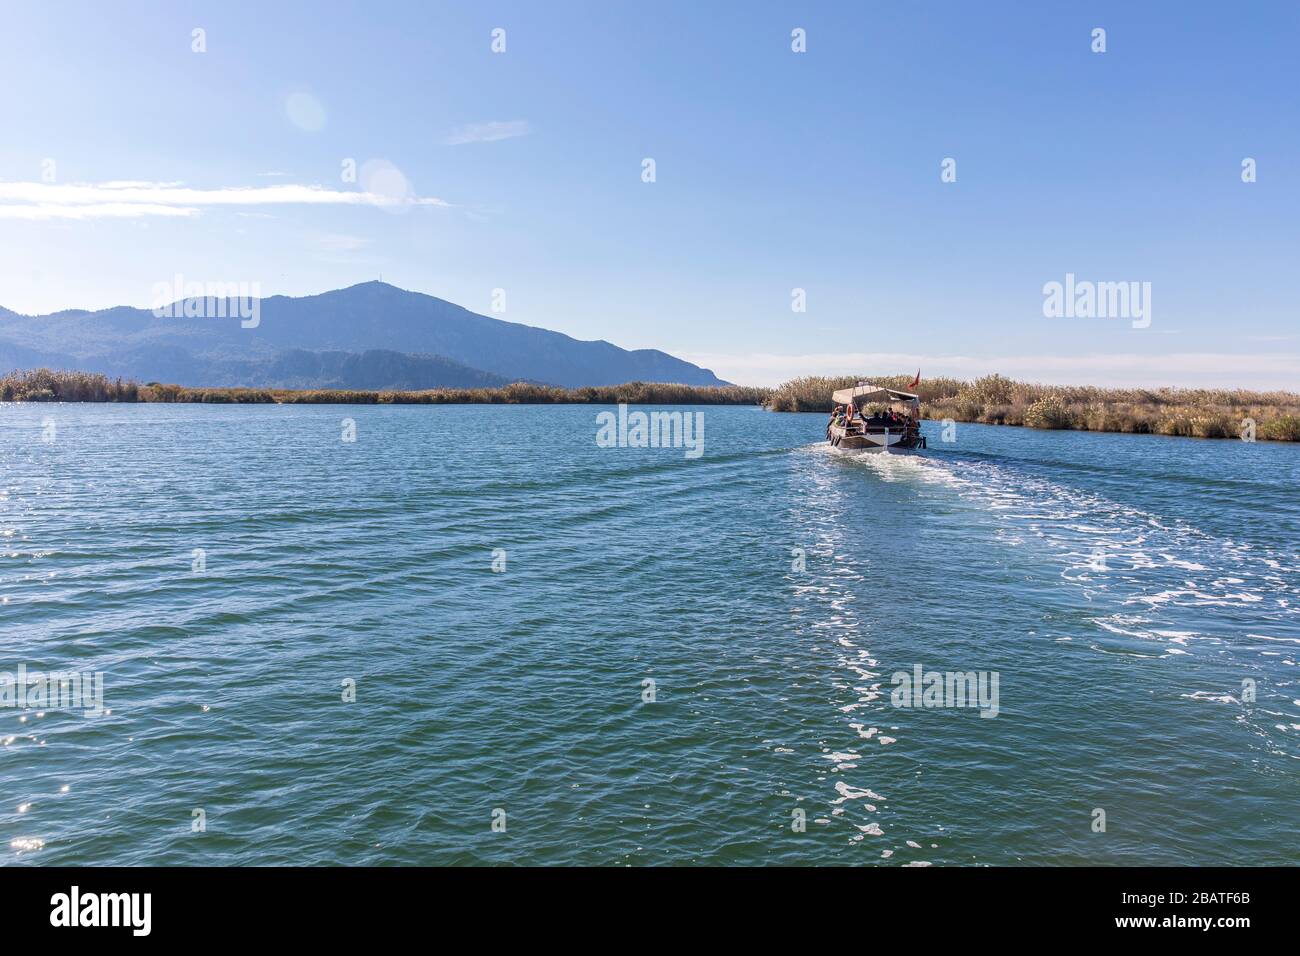 Dalyan River, Dalyan, Turkey Stock Photo